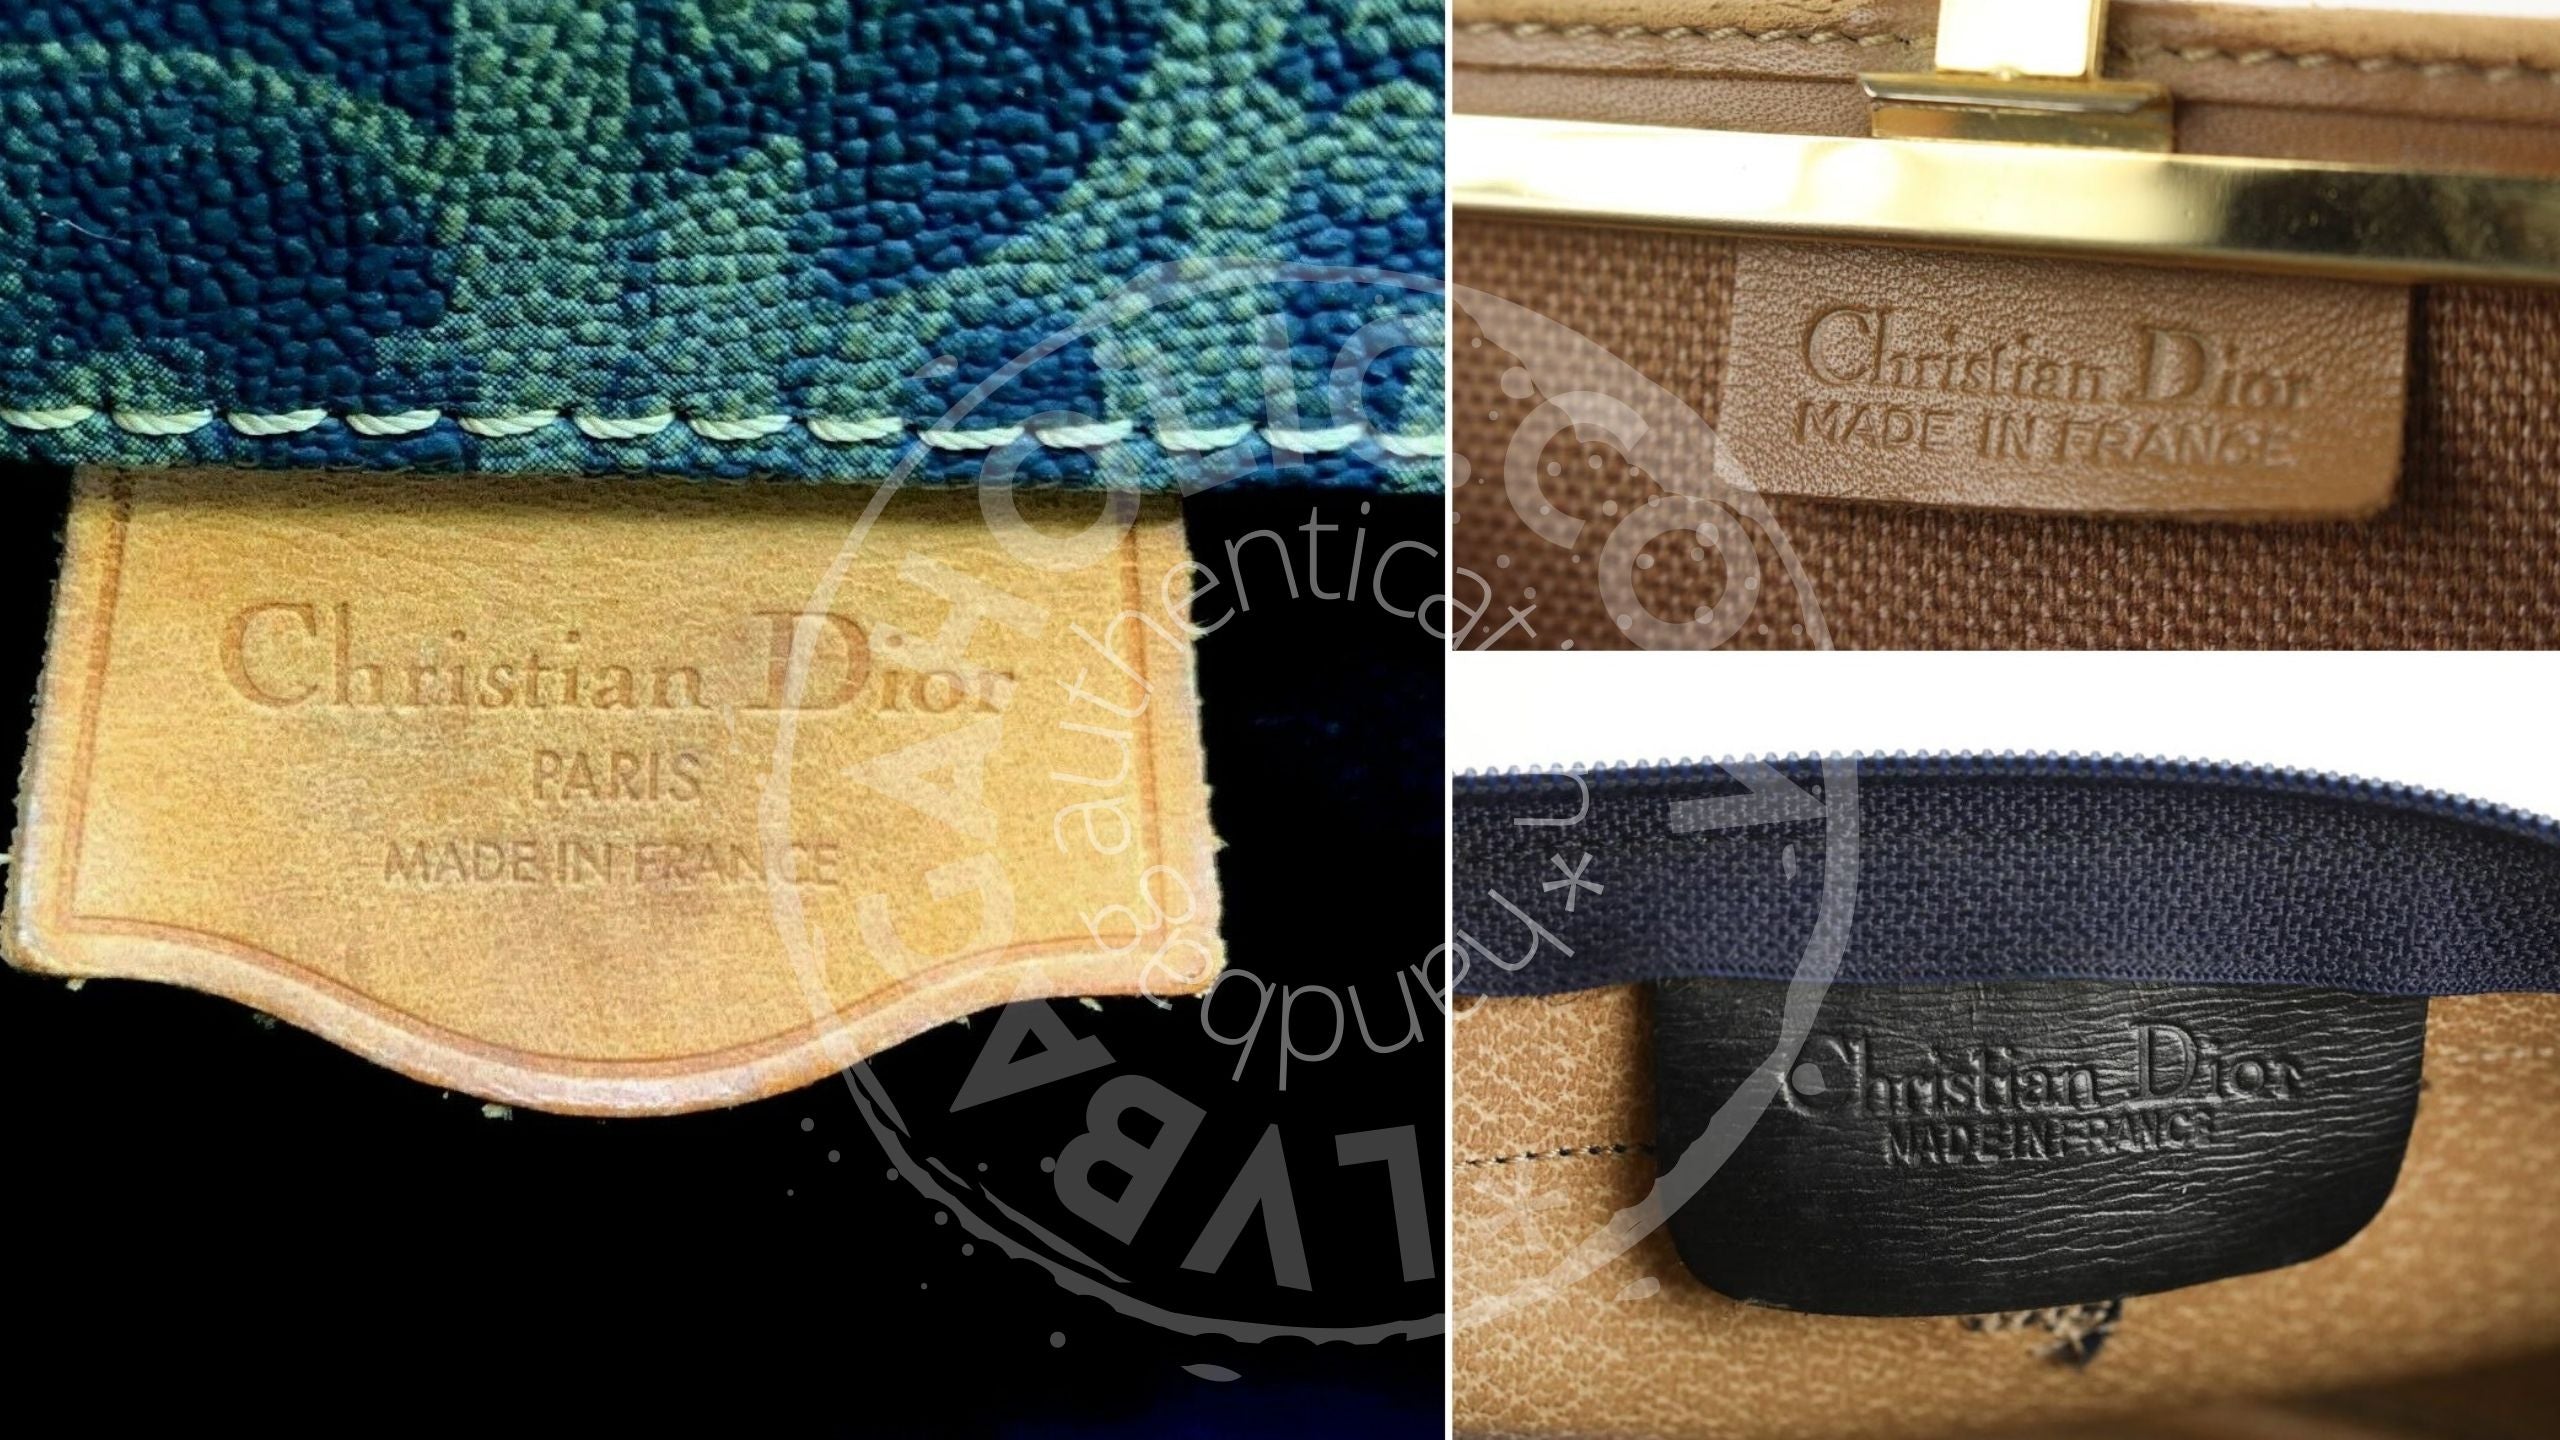 son bolsos de Dior hechos en France Leather Etiqueta 1980 1989 Etiqueta de cuero sin serie